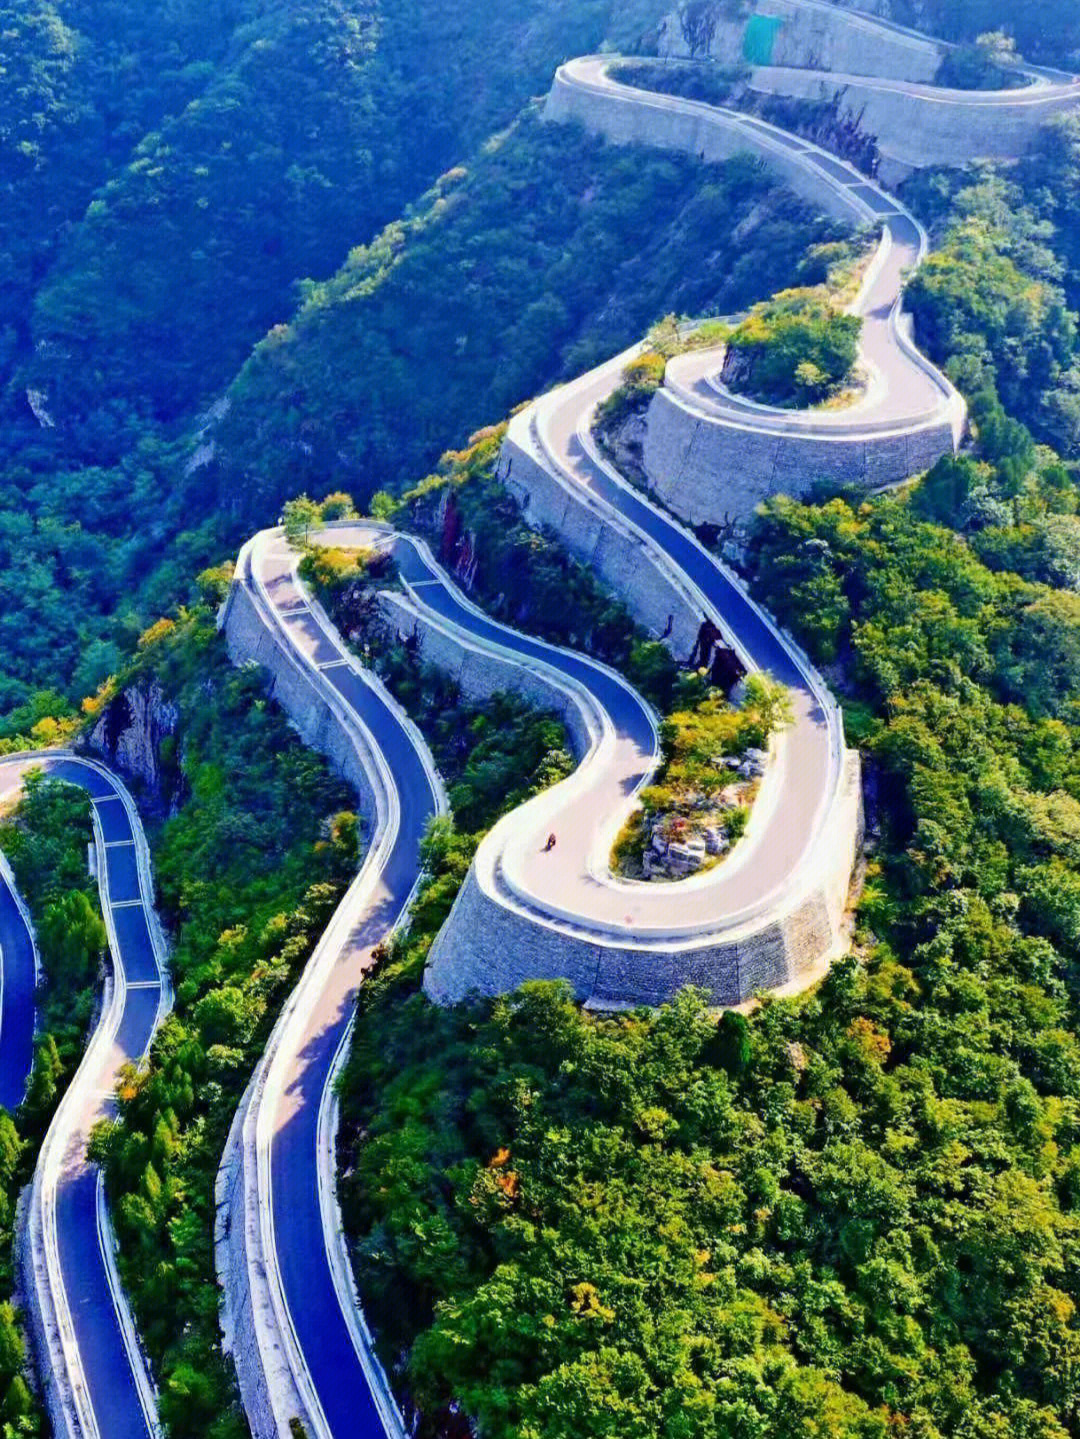 关于这条自驾天路:潍坊这条天路由潍坊南部山区的安丘天路,临朐天路